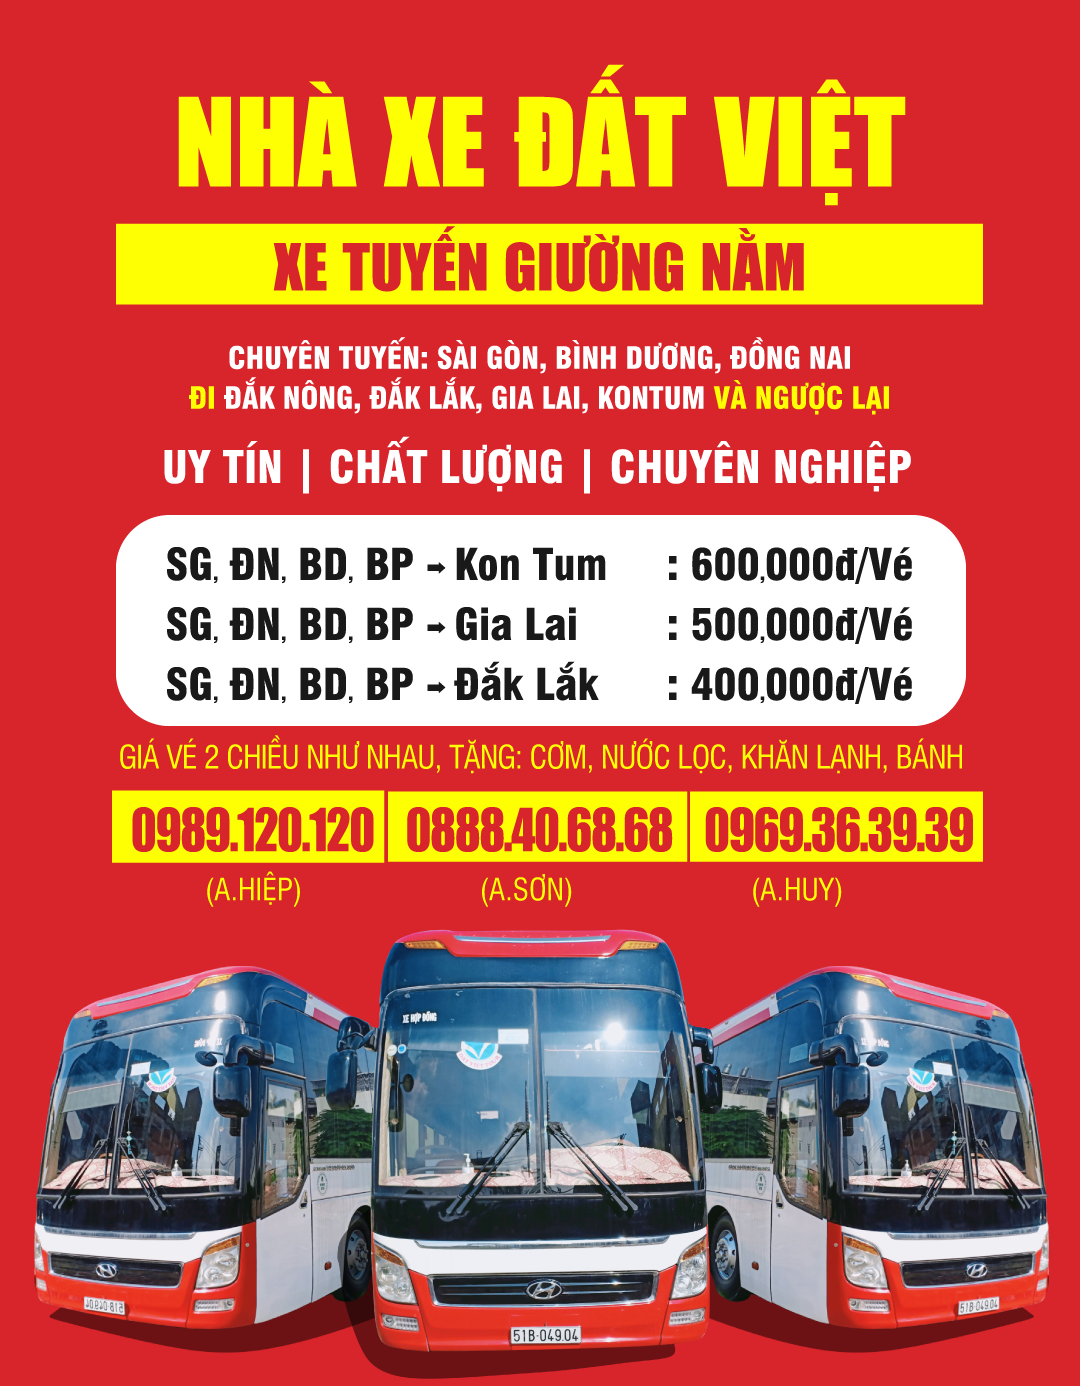 Vé xe giá rẻ SG/Bình Dương/Đồng Nai đi các tỉnh Tây Nguyên Đắk Nông, Đắk Lắk, Gia Lai, Kon Tum và ngược lại chỉ từ 400,000đ/khách.